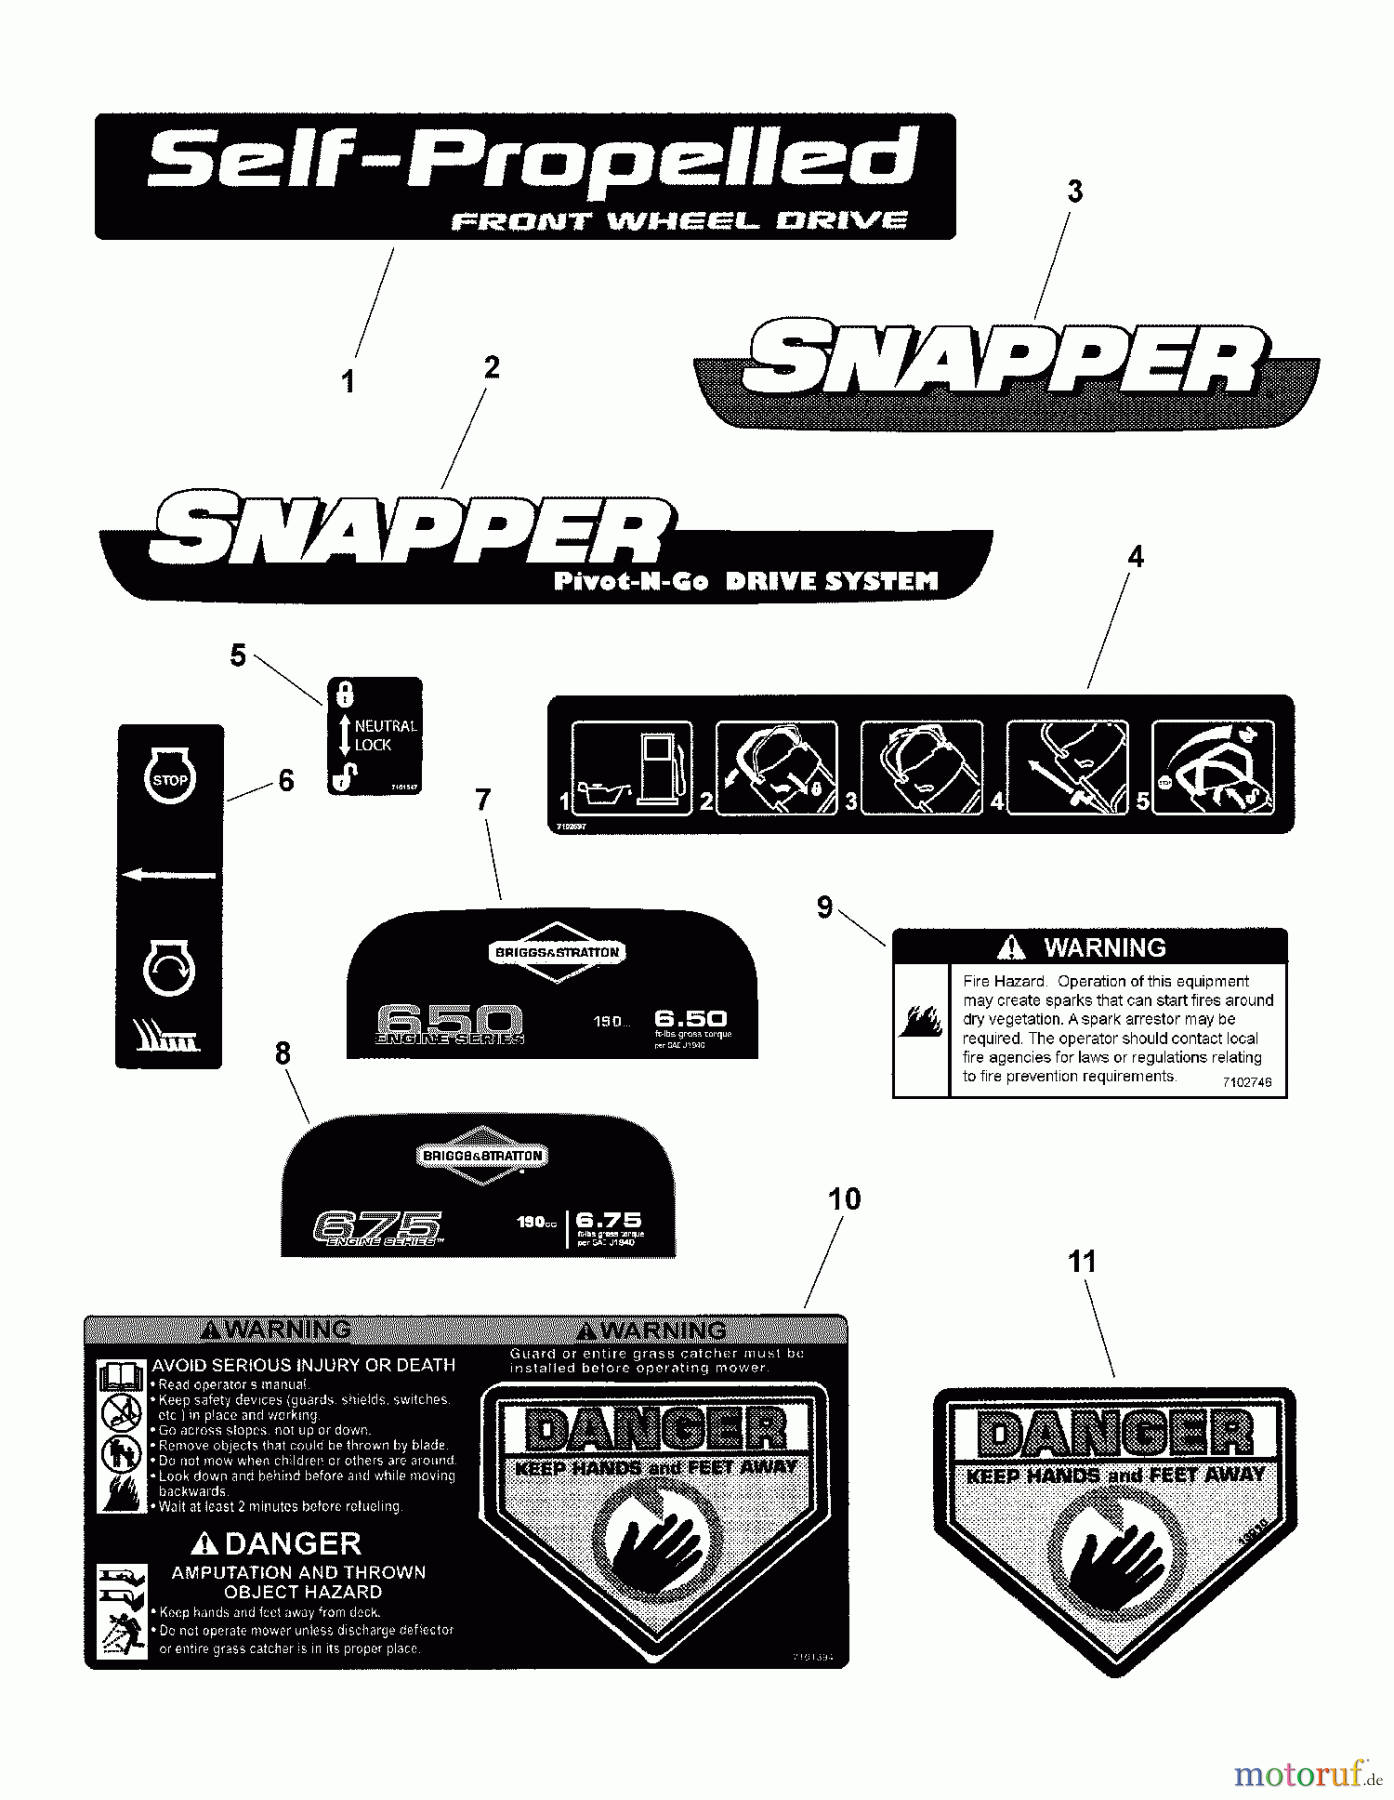  Snapper Rasenmäher NSPVH2265 (7800447) - Snapper 22